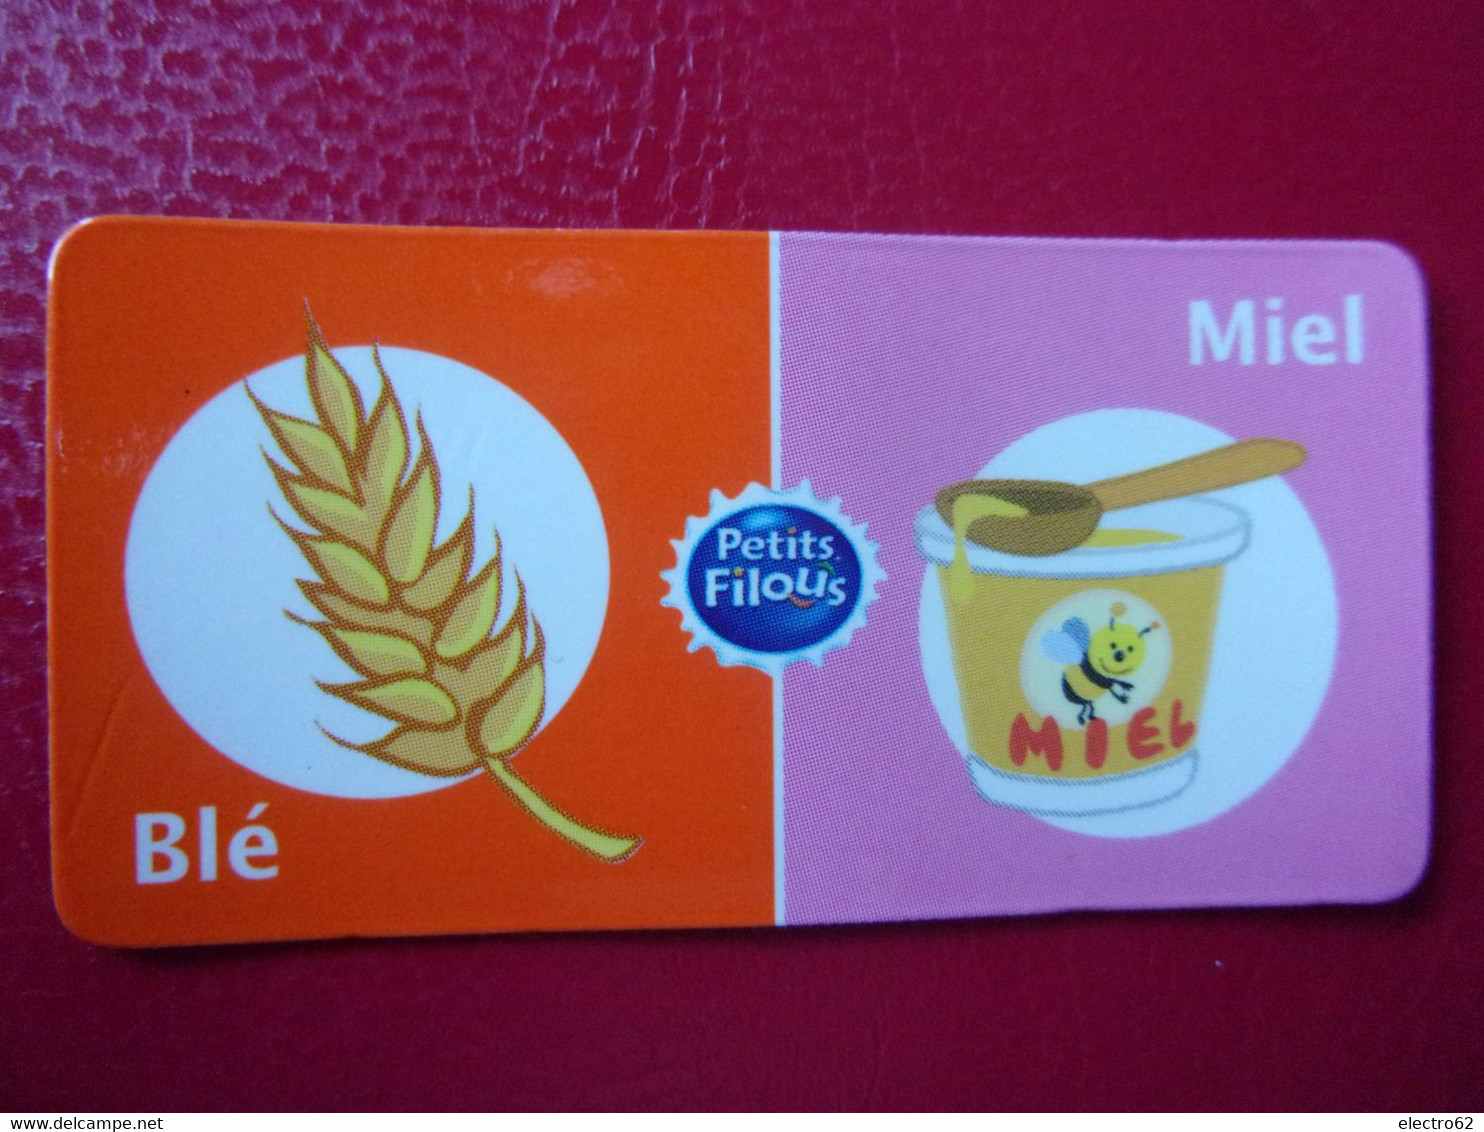 Magnet Petits Filous Blé Miel Magnets Mais Maïs Maiz Corn Majs Honning Honing Honey Miele - Publicitaires